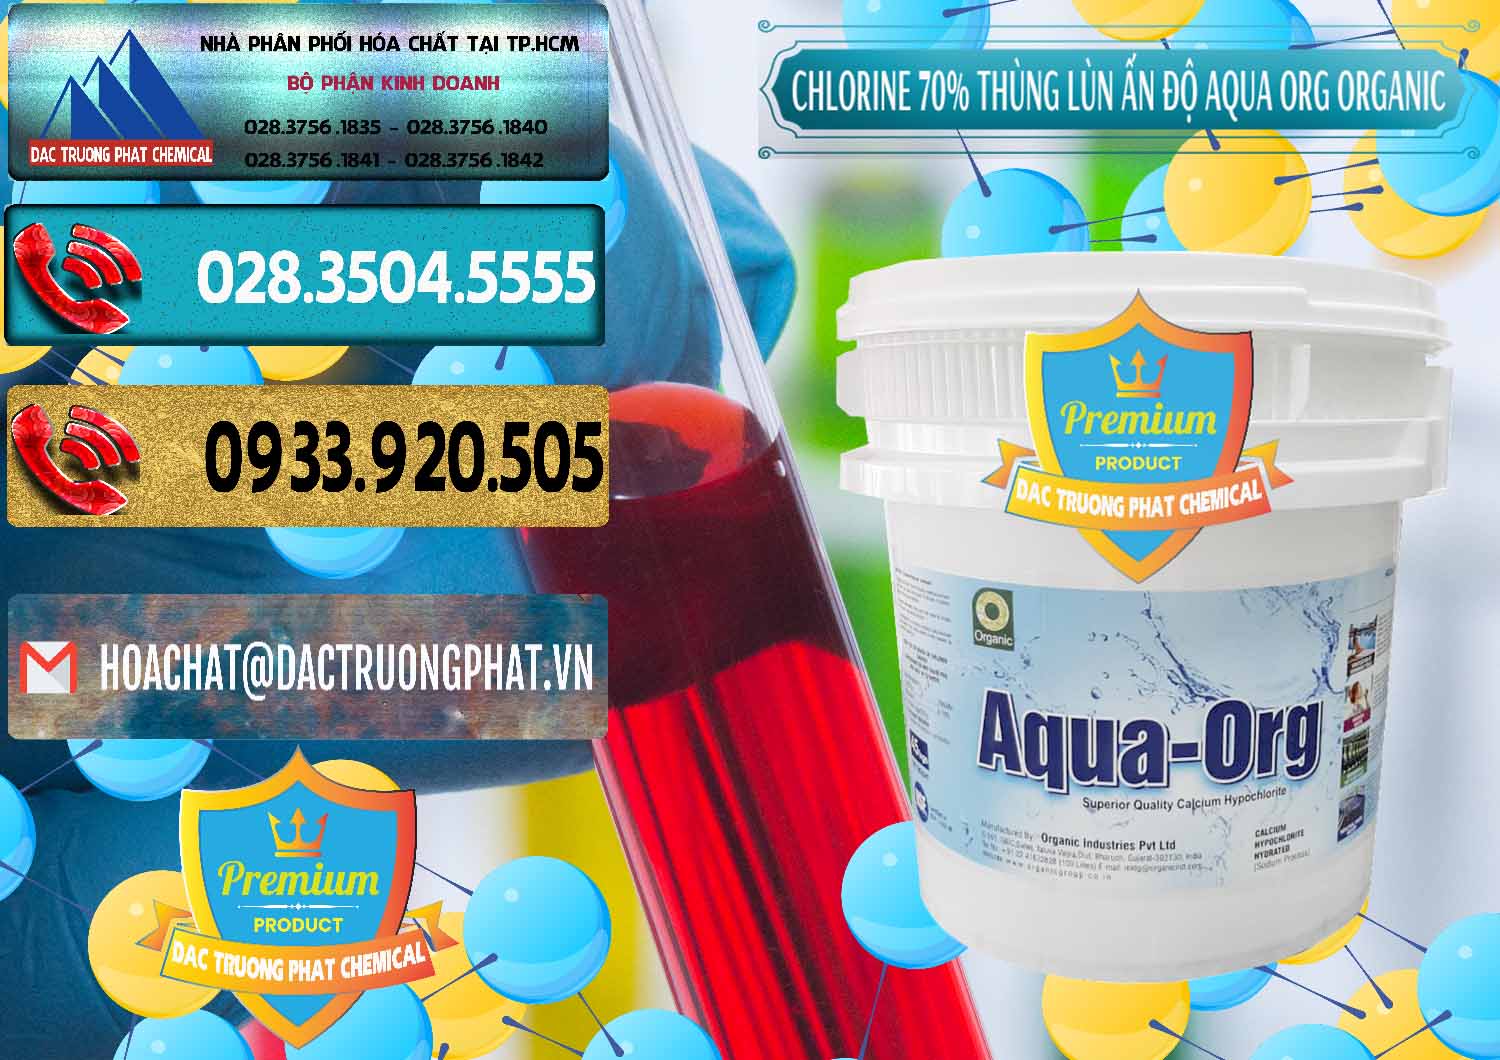 Đơn vị chuyên kinh doanh ( bán ) Chlorine – Clorin 70% Thùng Lùn Ấn Độ Aqua ORG Organic India - 0212 - Cty chuyên cung cấp ( nhập khẩu ) hóa chất tại TP.HCM - hoachatdetnhuom.com